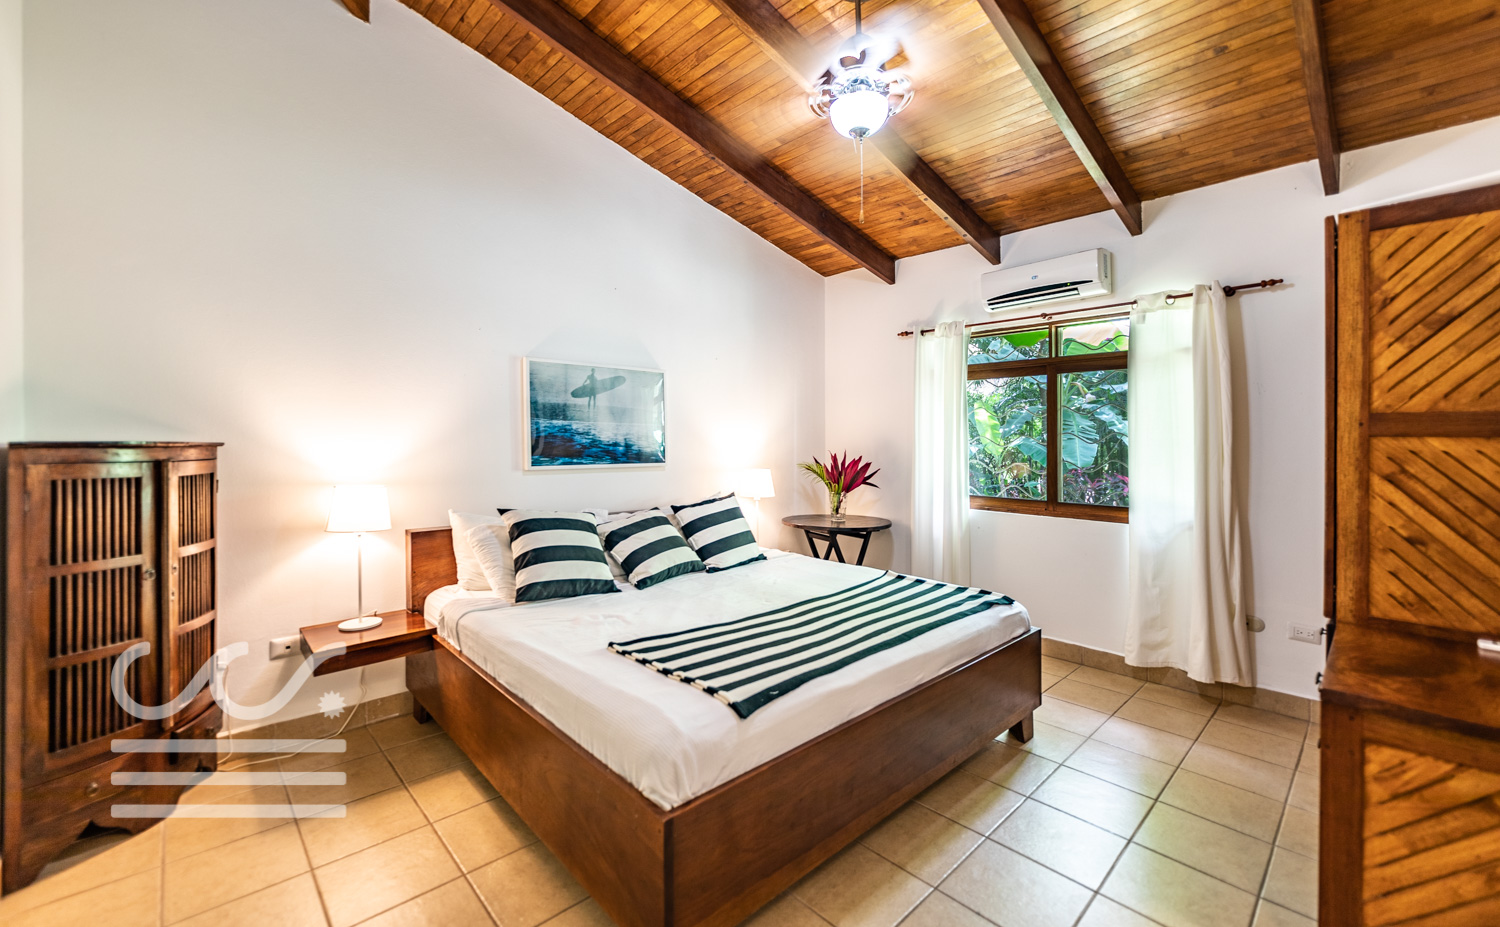 Casa-de-Sueño-Wanderlust-Realty-Real-Estate-Rentals-Nosara-Costa-Rica-29.jpg